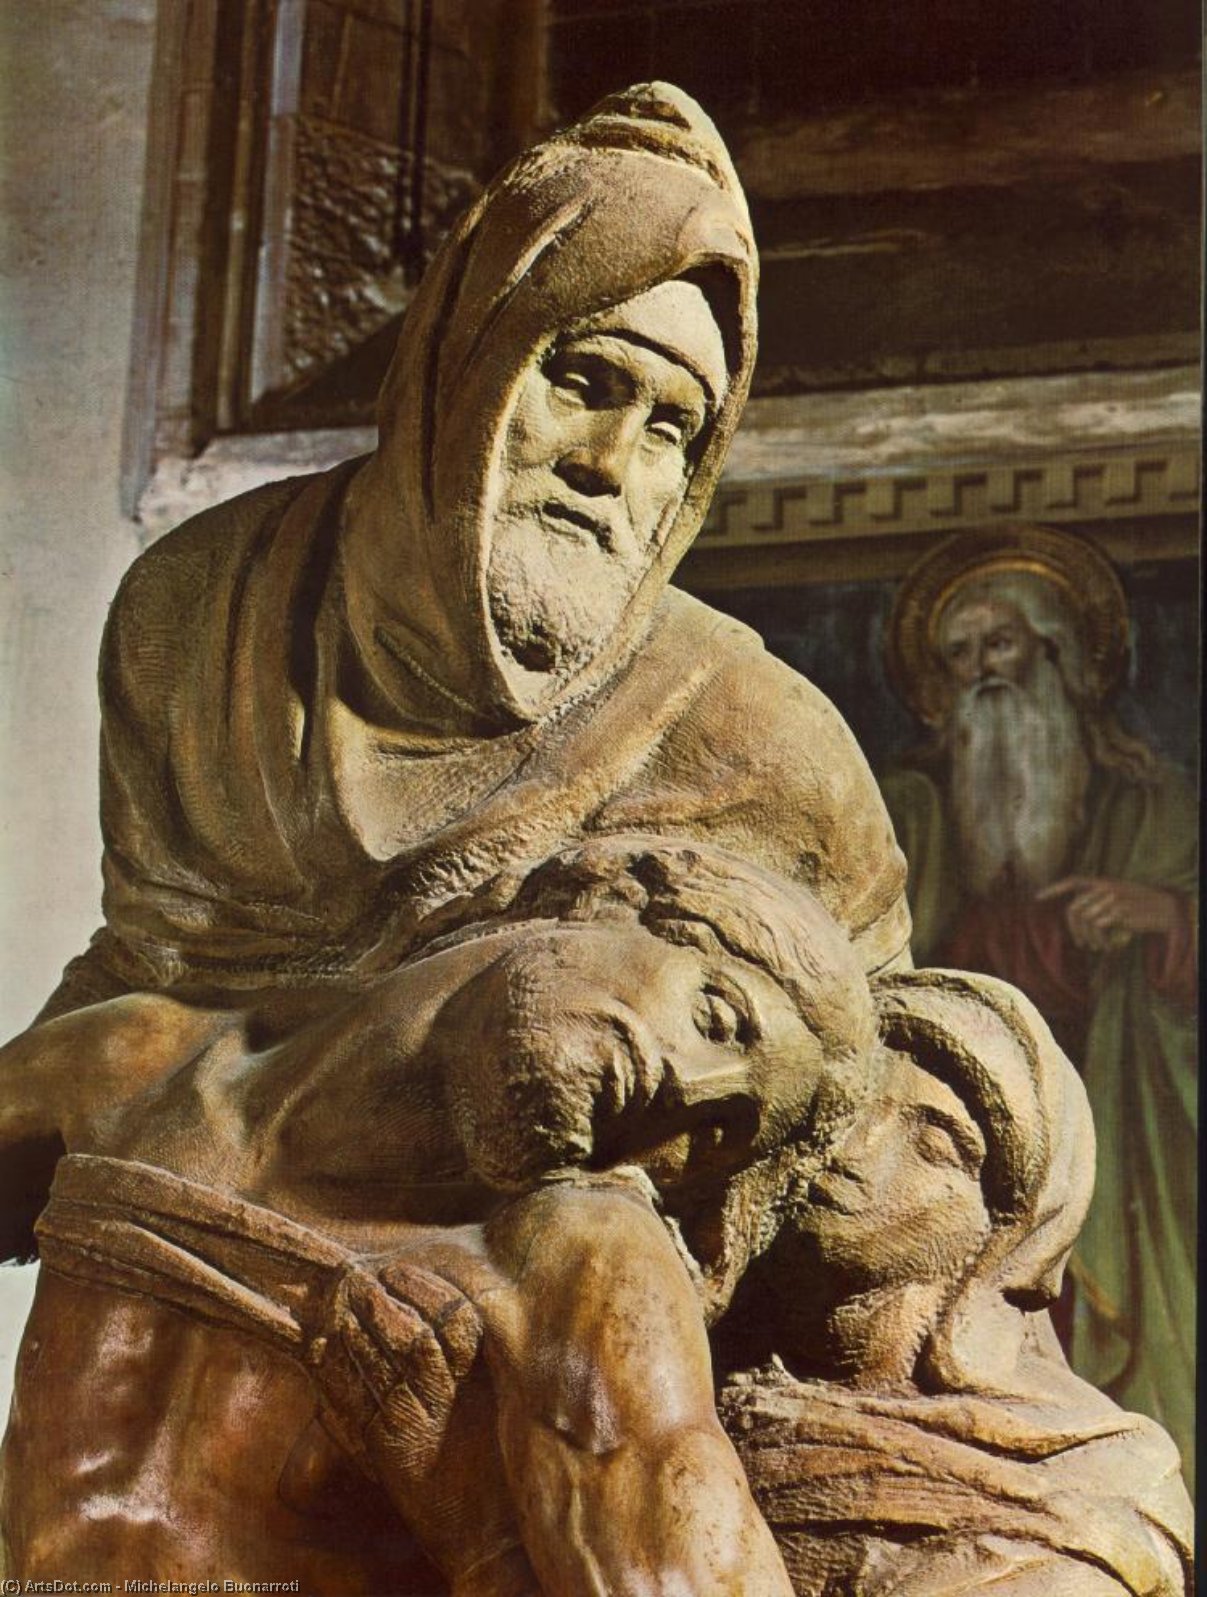 WikiOO.org - Enciklopedija likovnih umjetnosti - Slikarstvo, umjetnička djela Michelangelo Buonarroti - Pietà (detail)